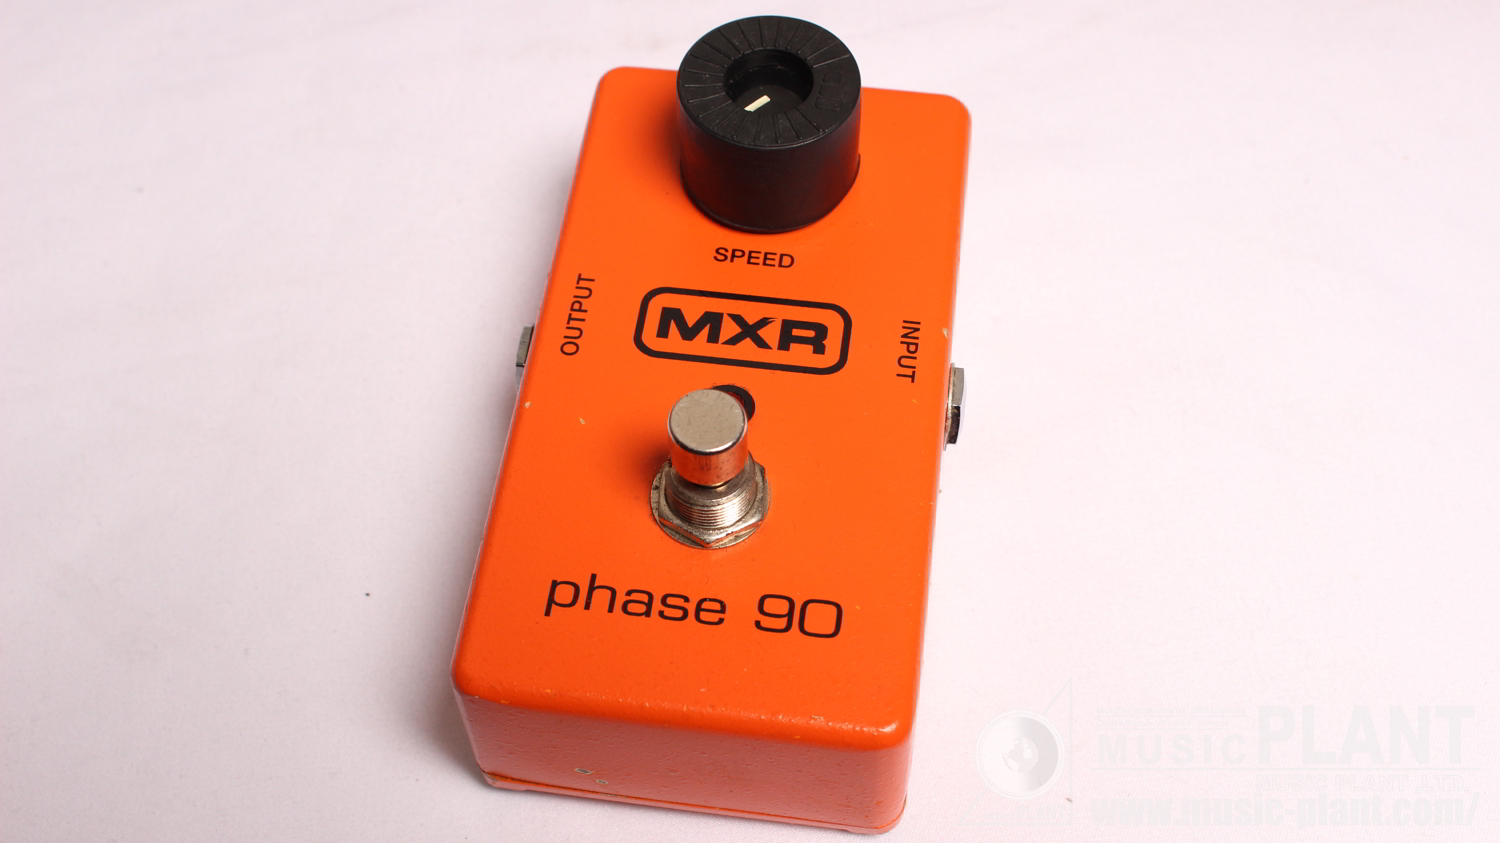 MXR フェイザーM101 Phase 90中古()売却済みです。あしからずご了承ください。 | MUSIC PLANT WEBSHOP